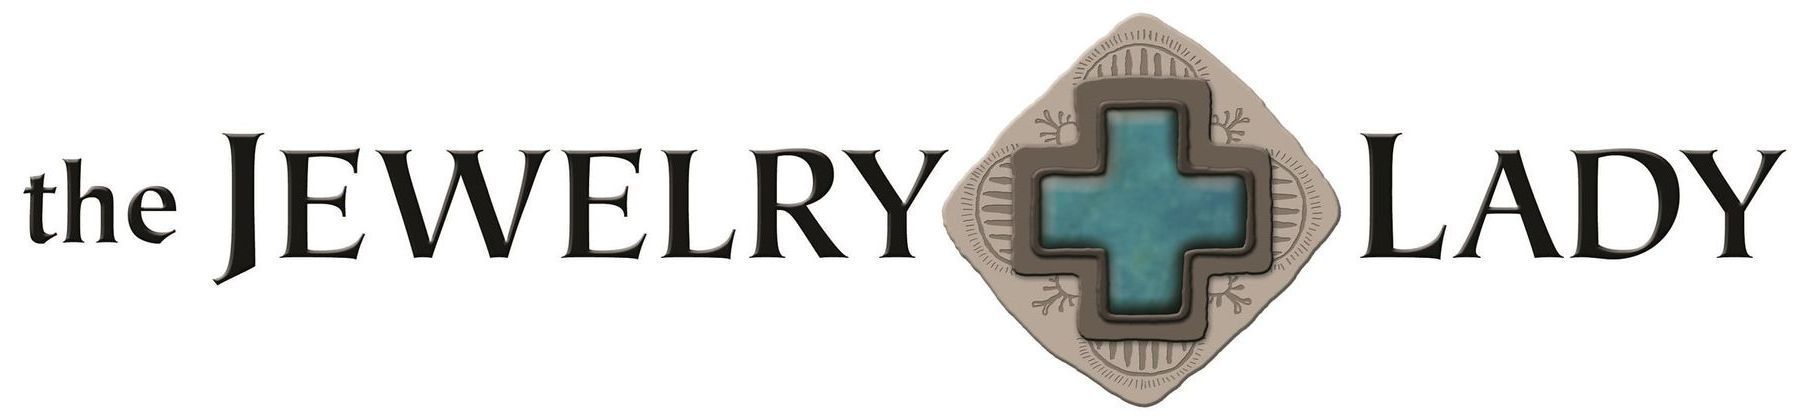 The Jewelry Lady Logo